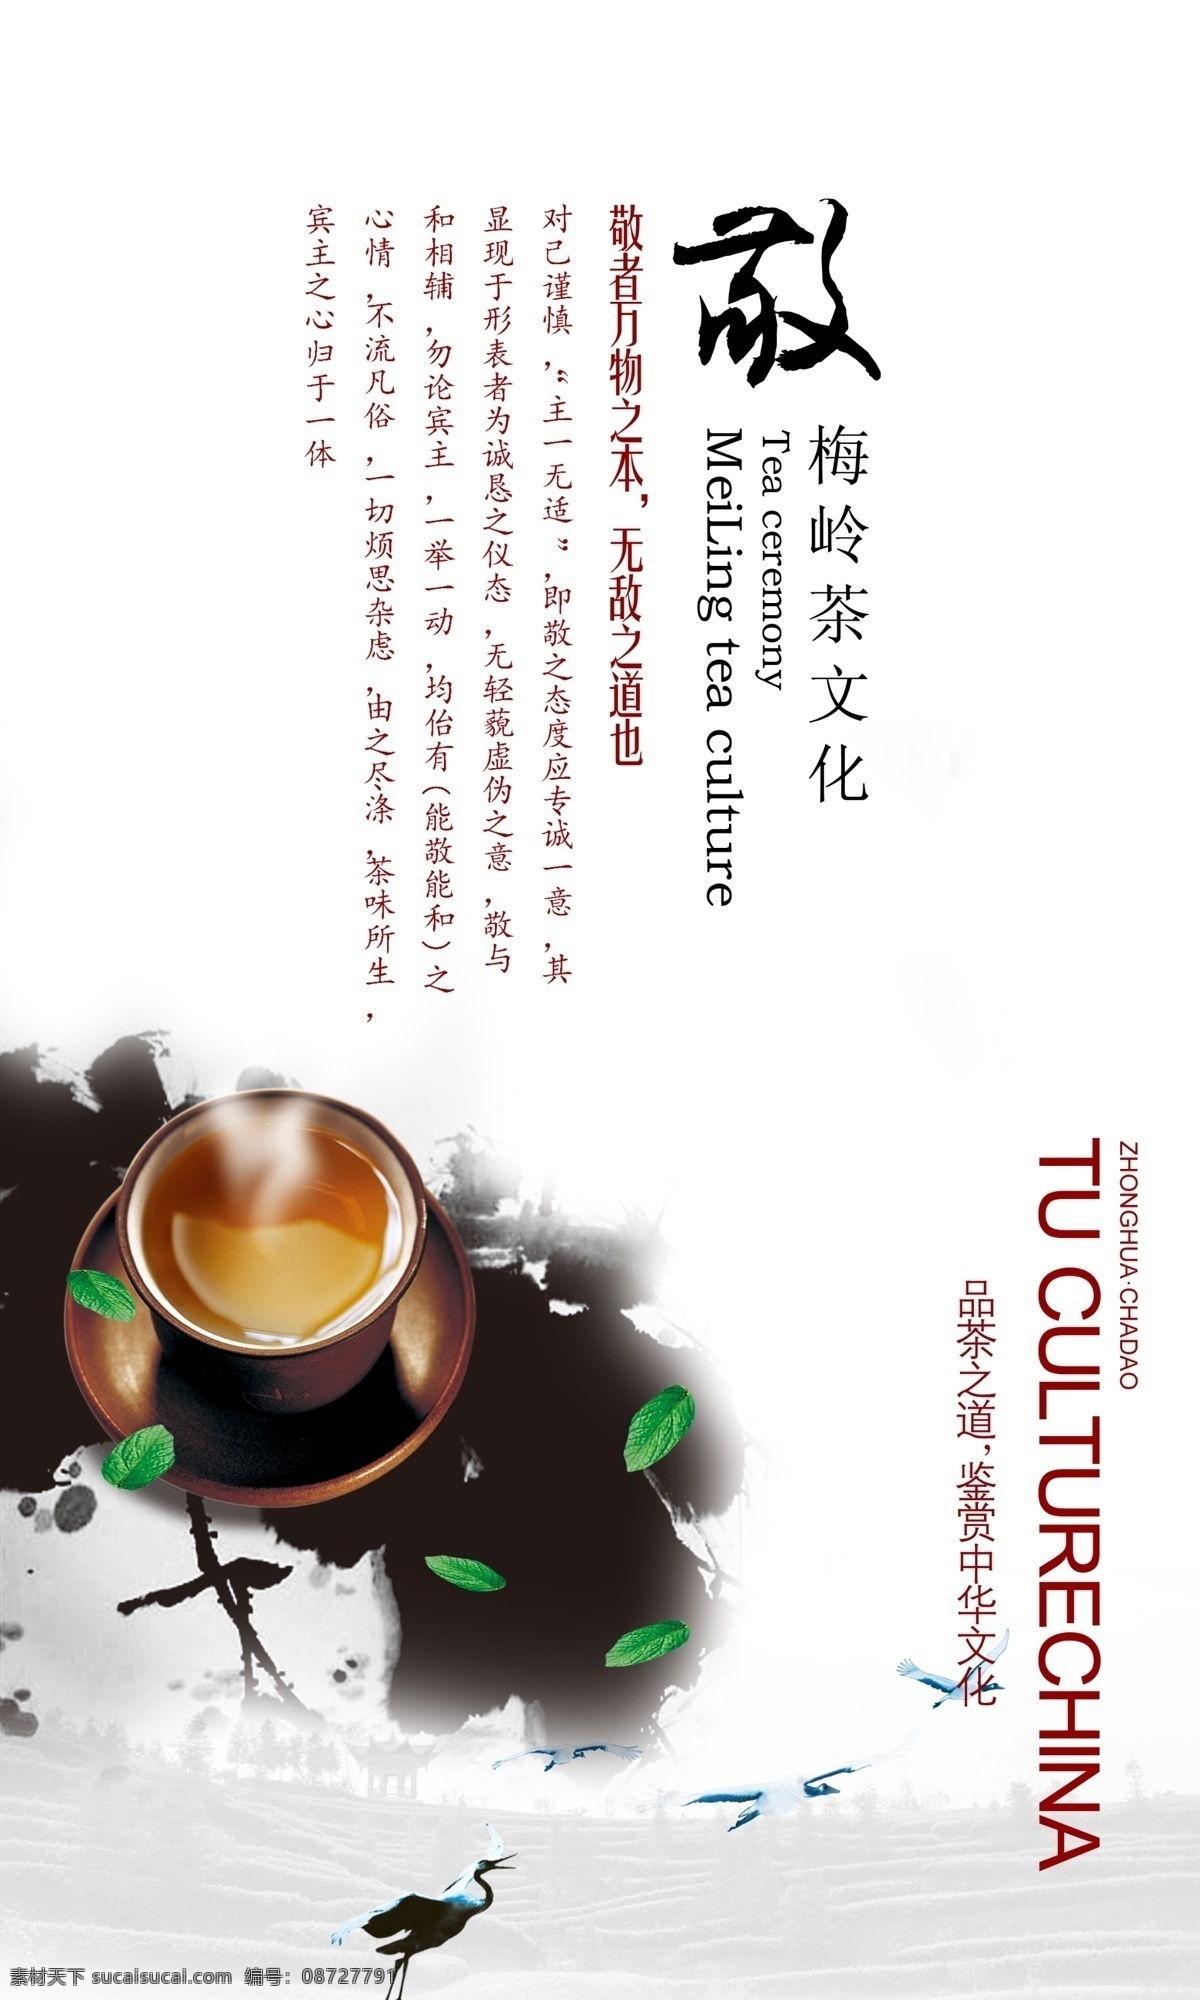 白鹭 茶碗 茶叶 广告设计模板 绿茶 书法字 水墨 源文件 品茶 文化 模板下载 品茶文化 展板模板